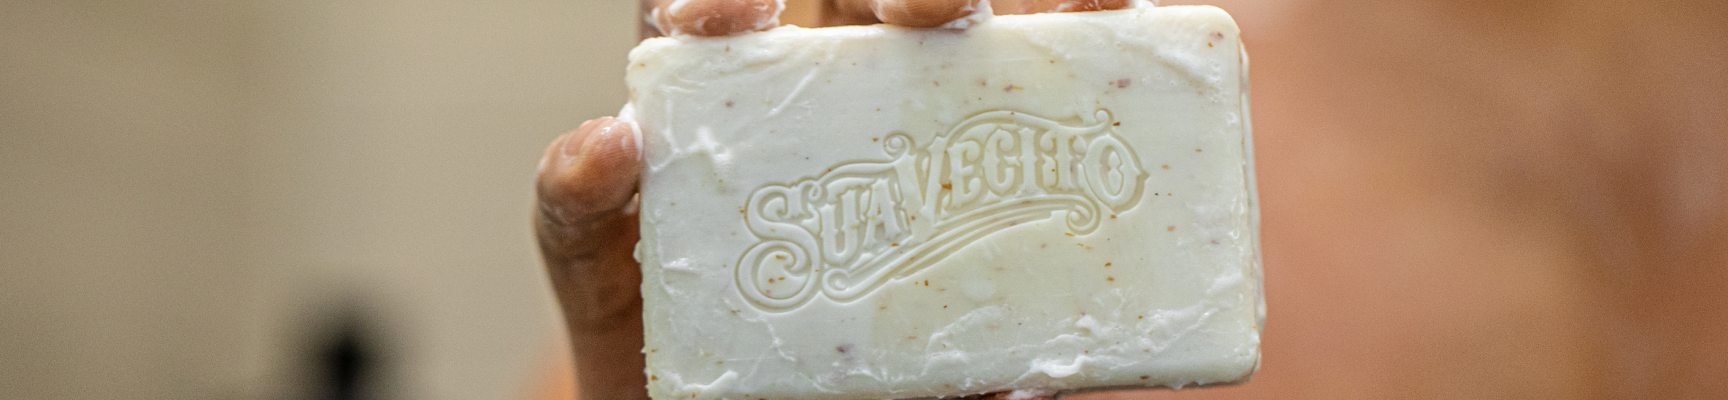 lathered Suavecito Classic Soap